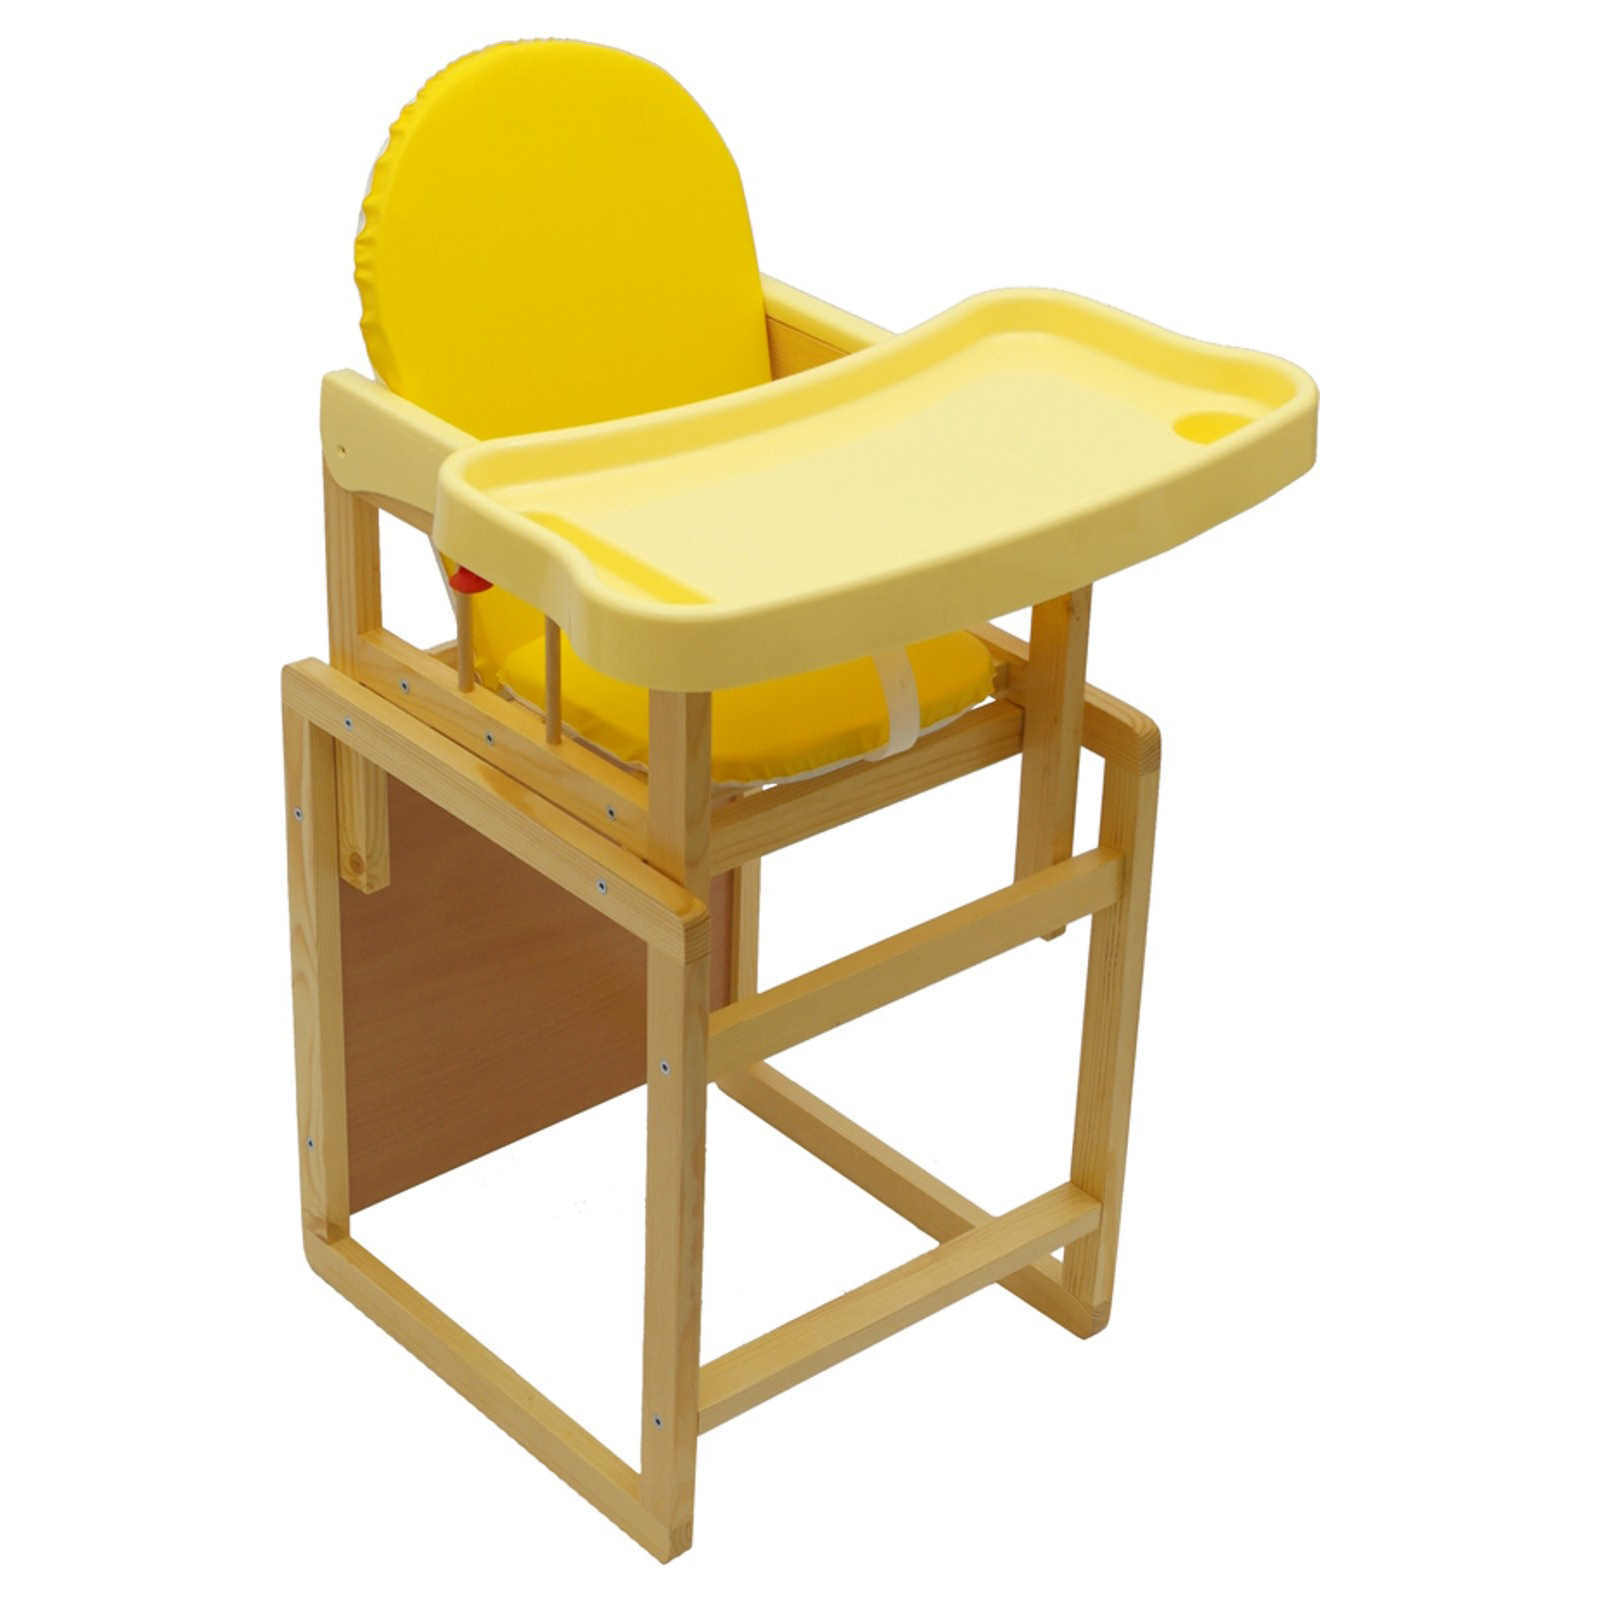 Столик стульчик детский авито